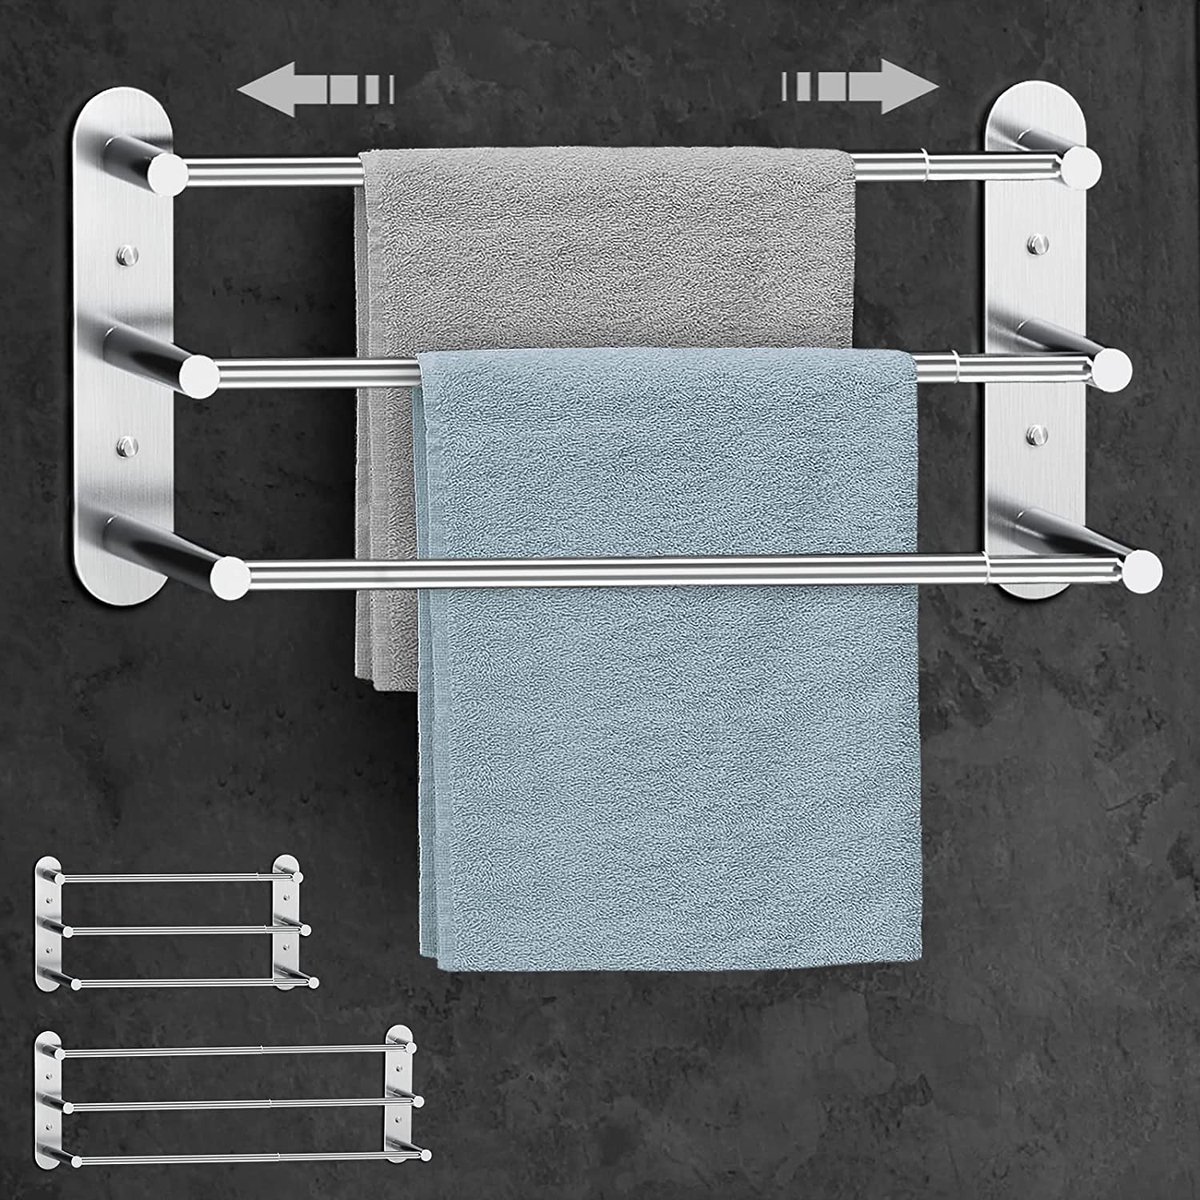 Handdoekstang zonder boren - handdoekhouder badkamer uitschuifbaar 37-70 cm - roestvrijstalen handdoekstang wandplank voor badkamer keuken - 2 installatiemethoden, zilver